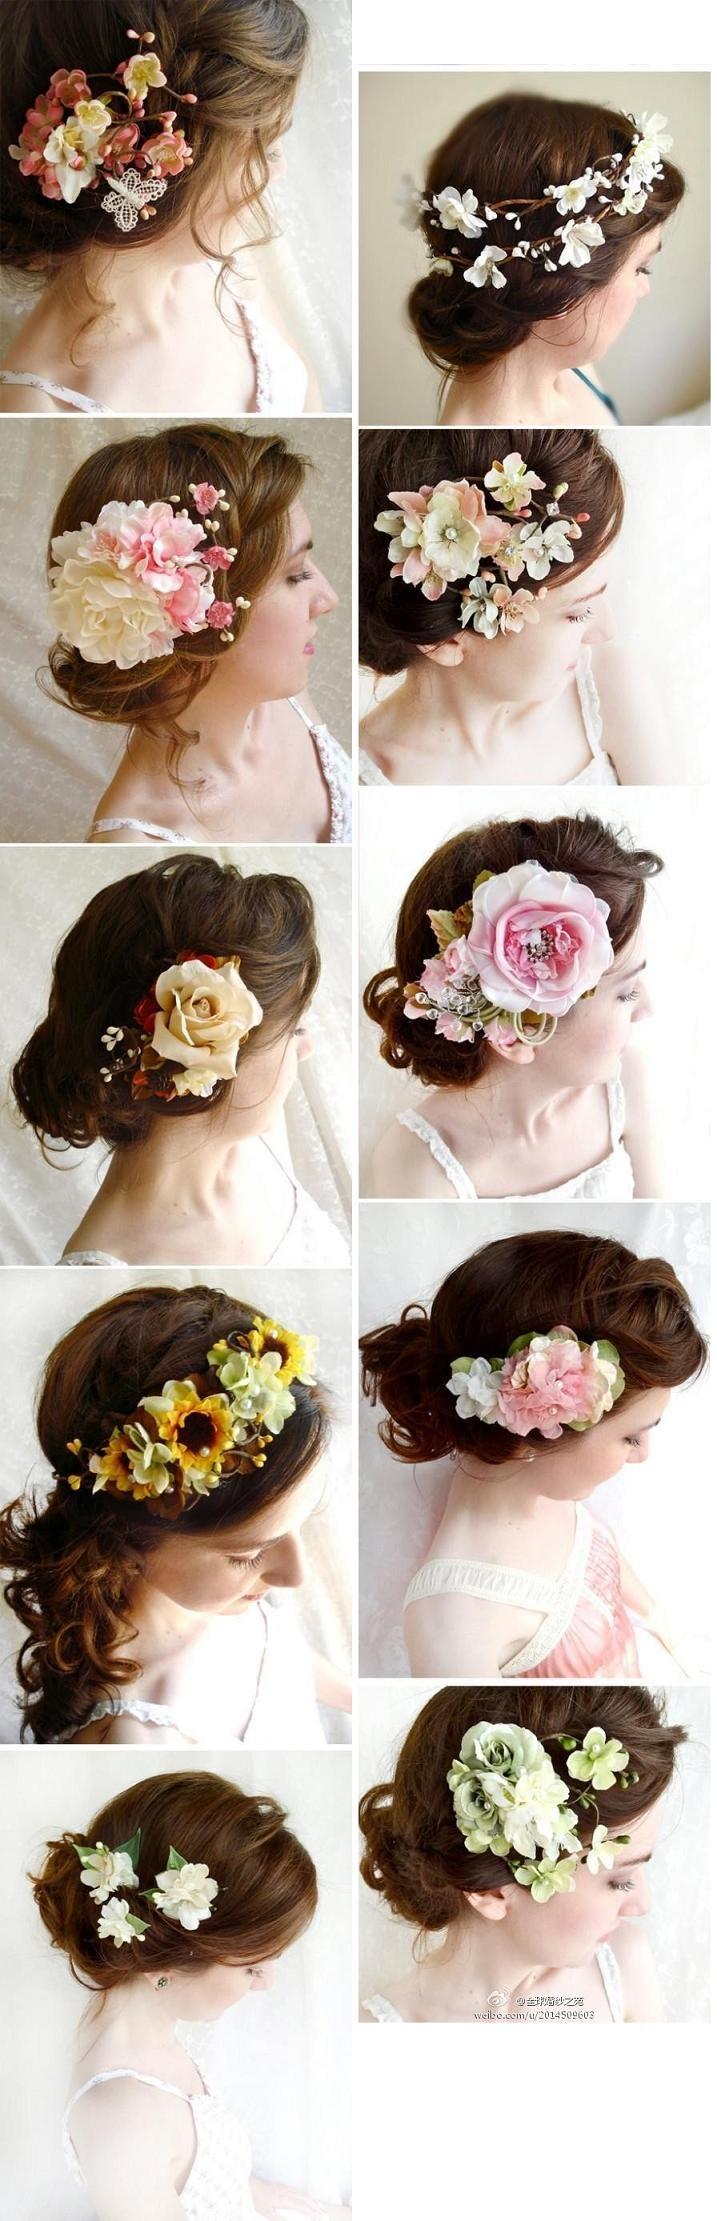 زفاف - تسريحات الشعر للعروس.